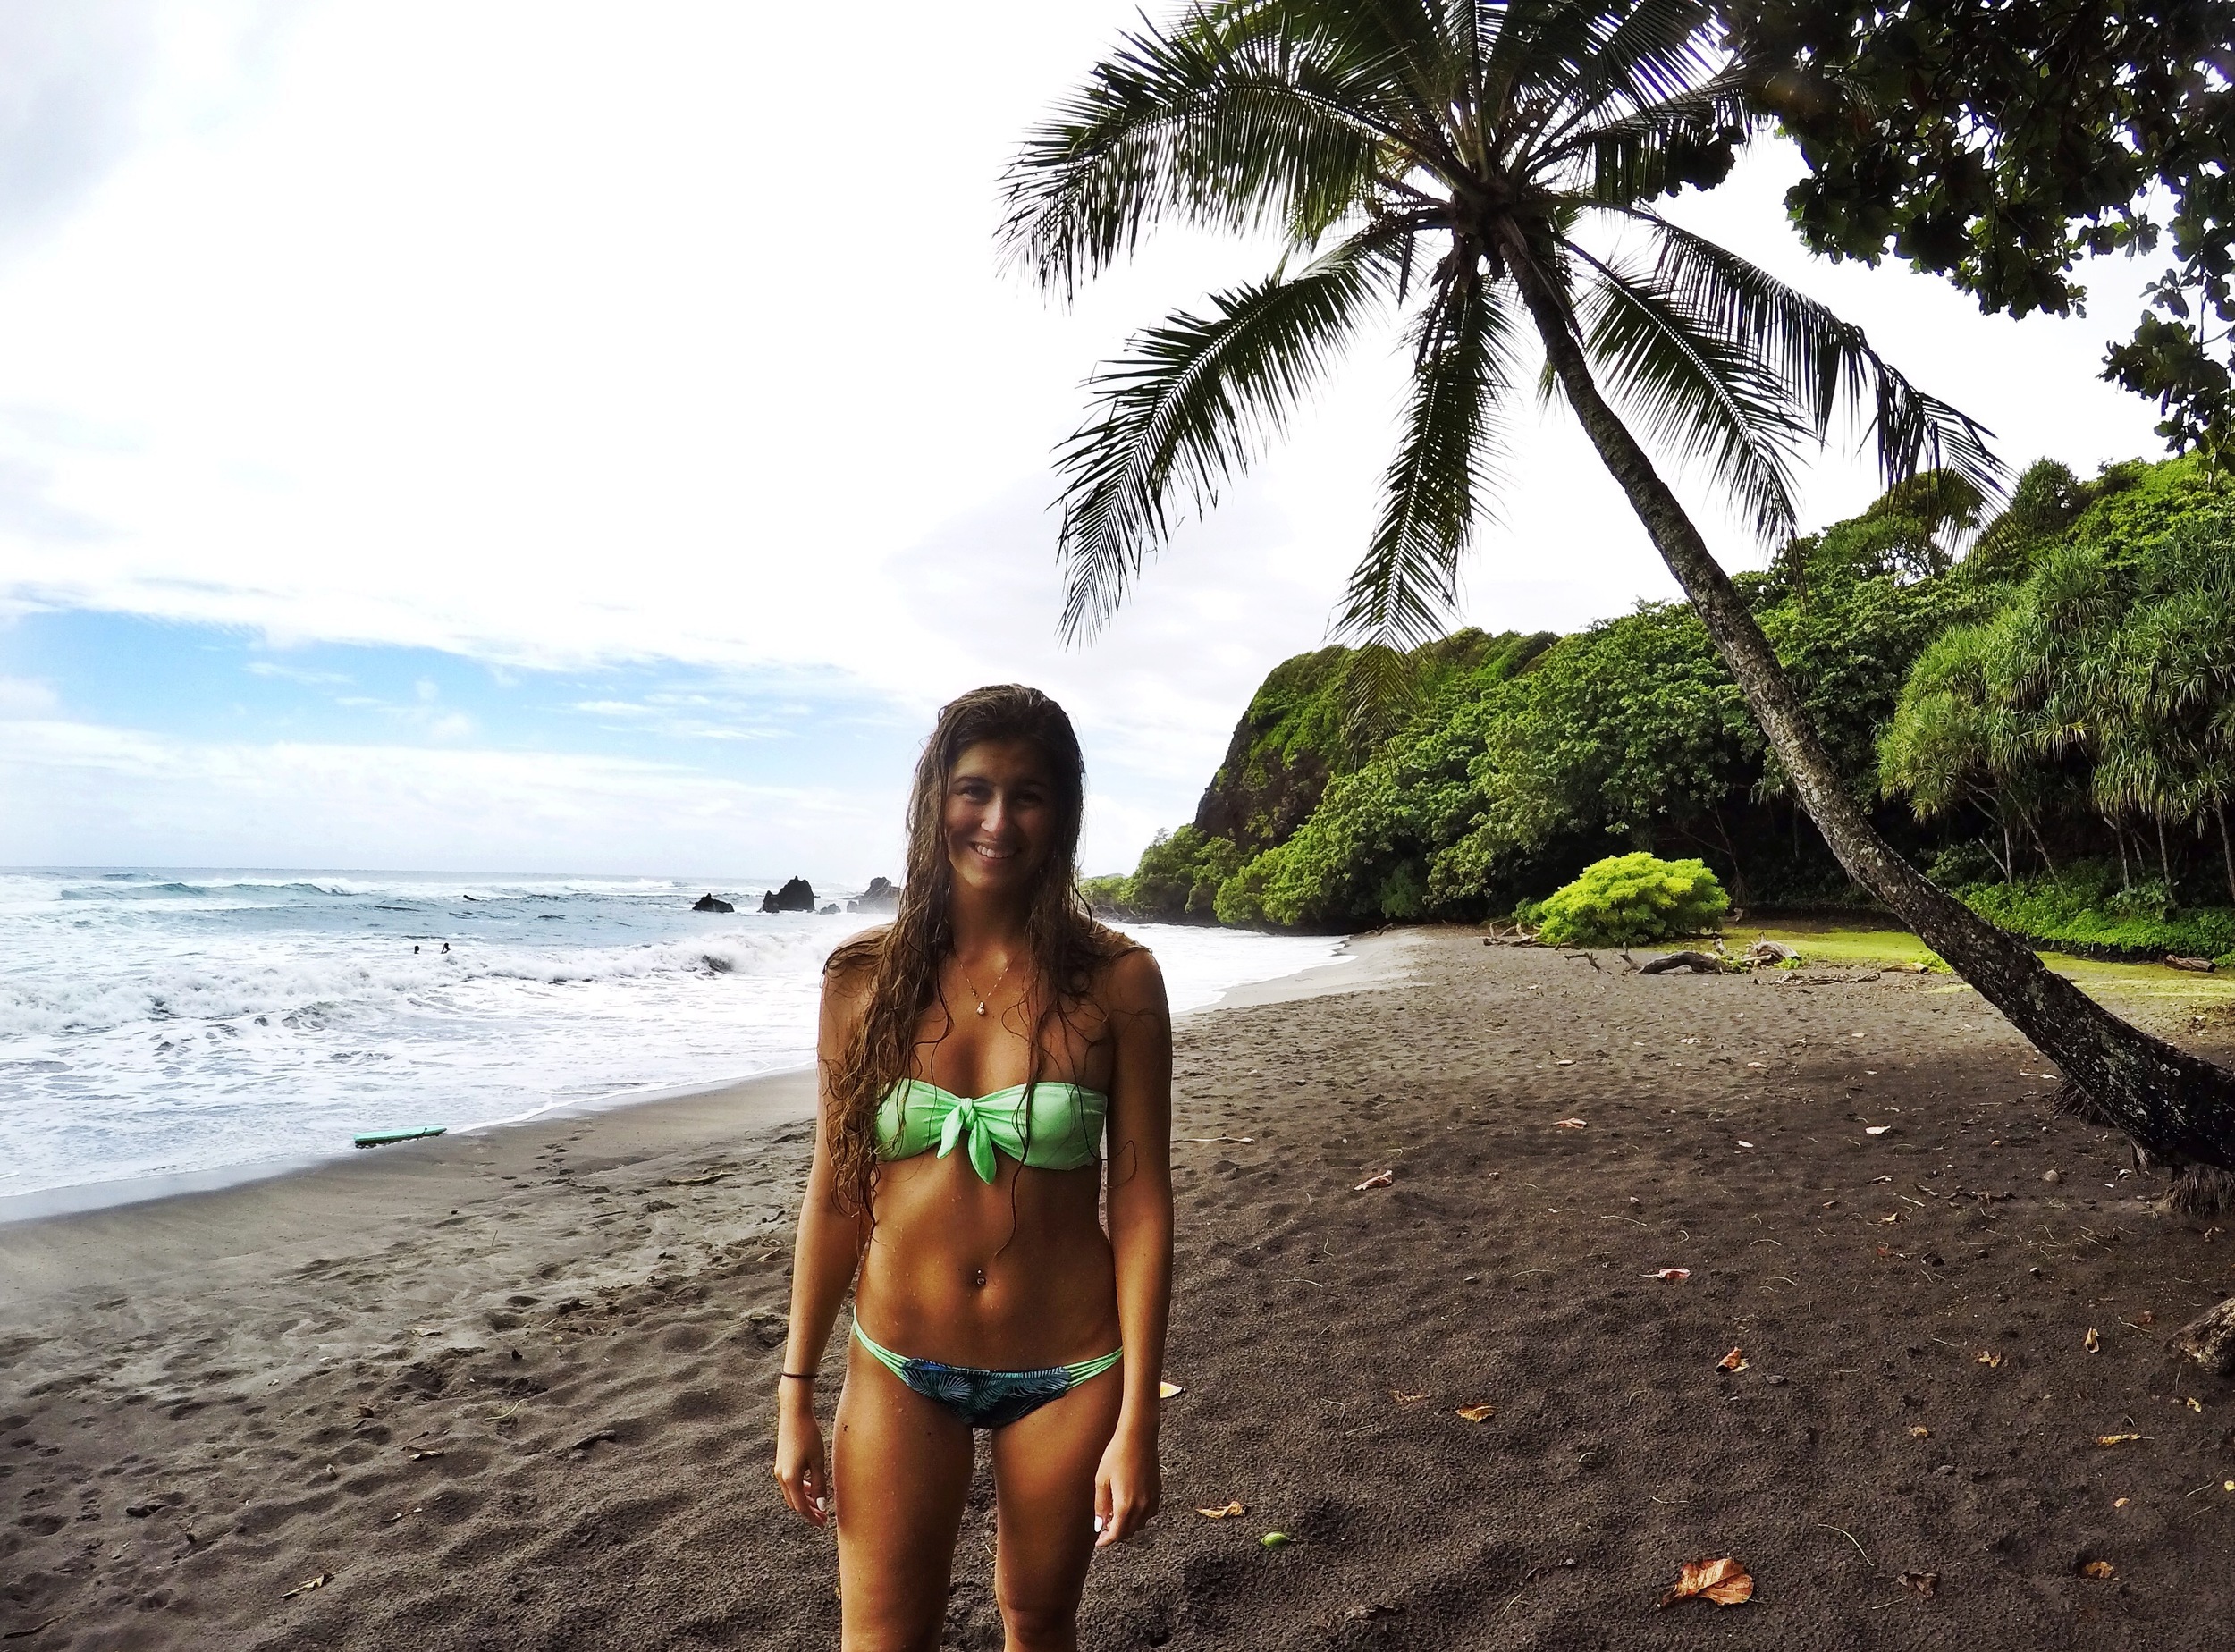 chantel beer share hawaii nude beach tumblr photos